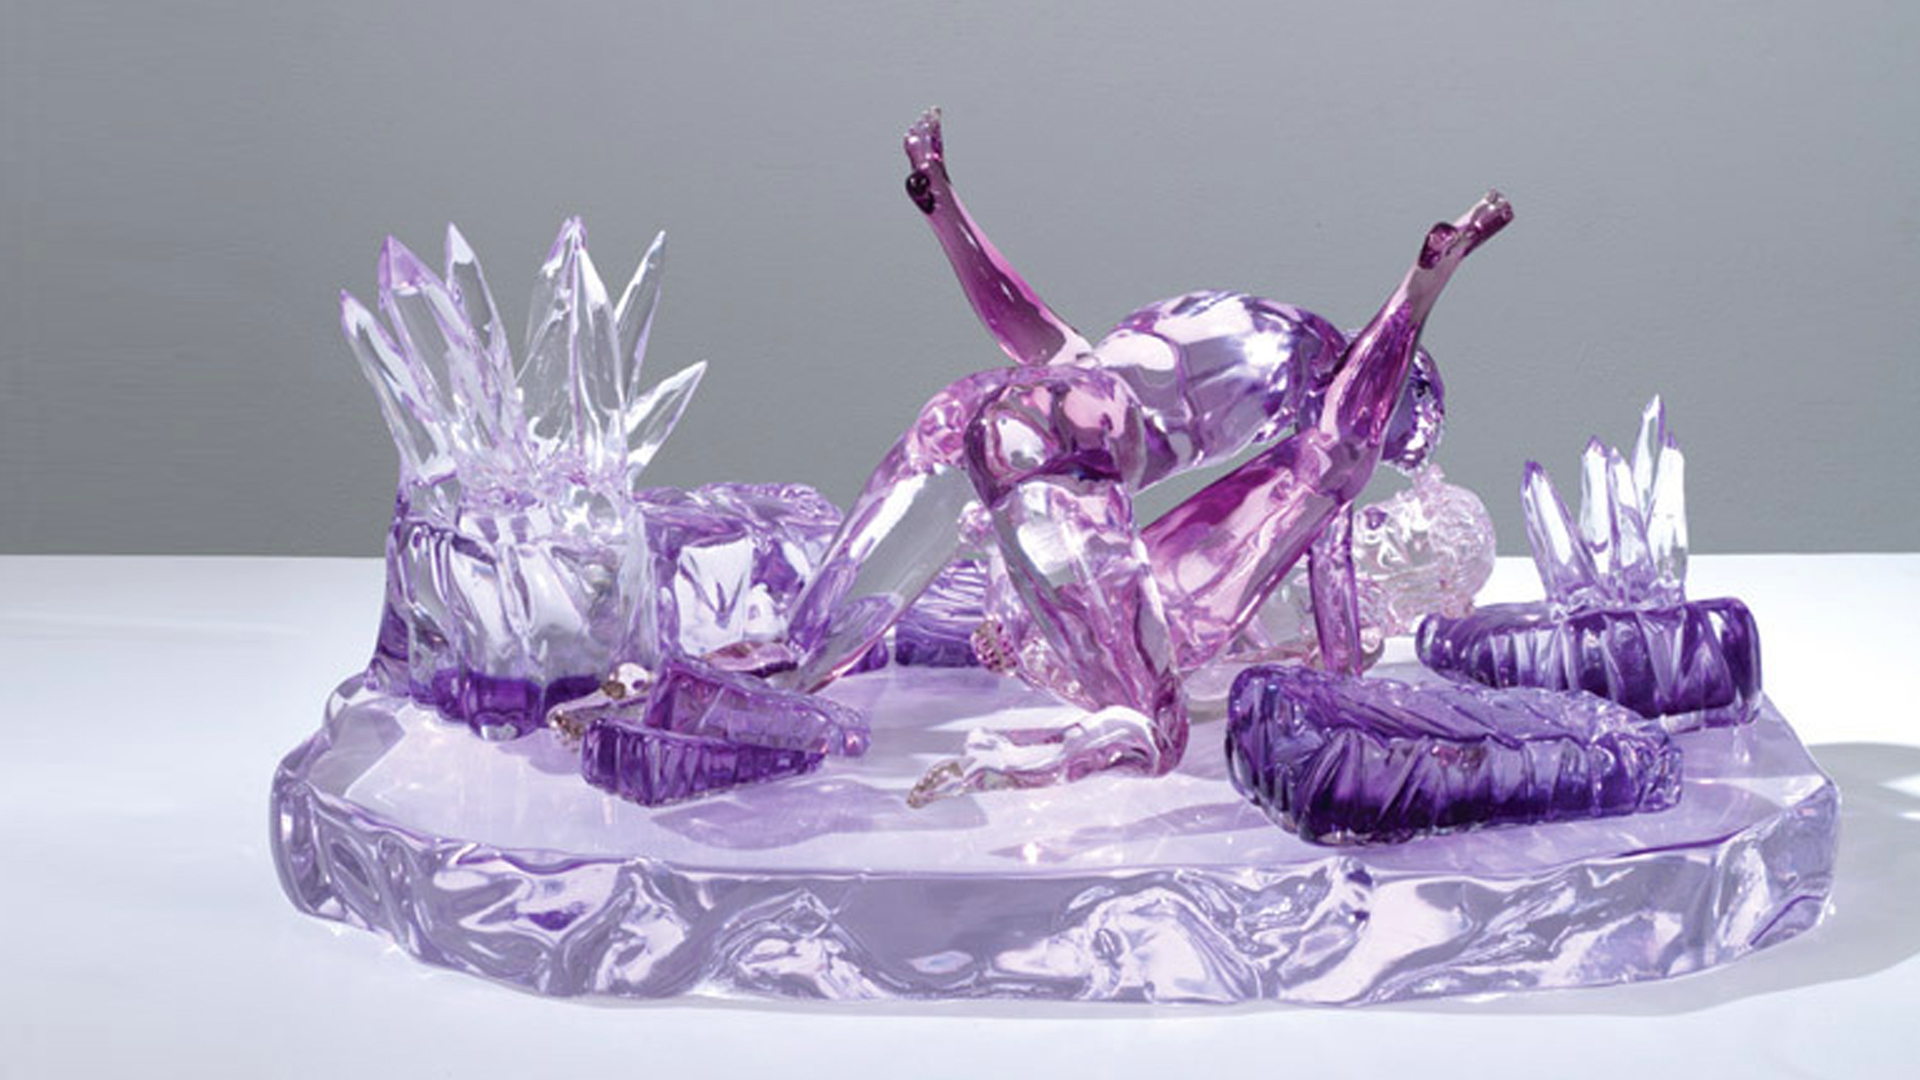 Jeff Koons / Violet Ice (Kama Sutra)